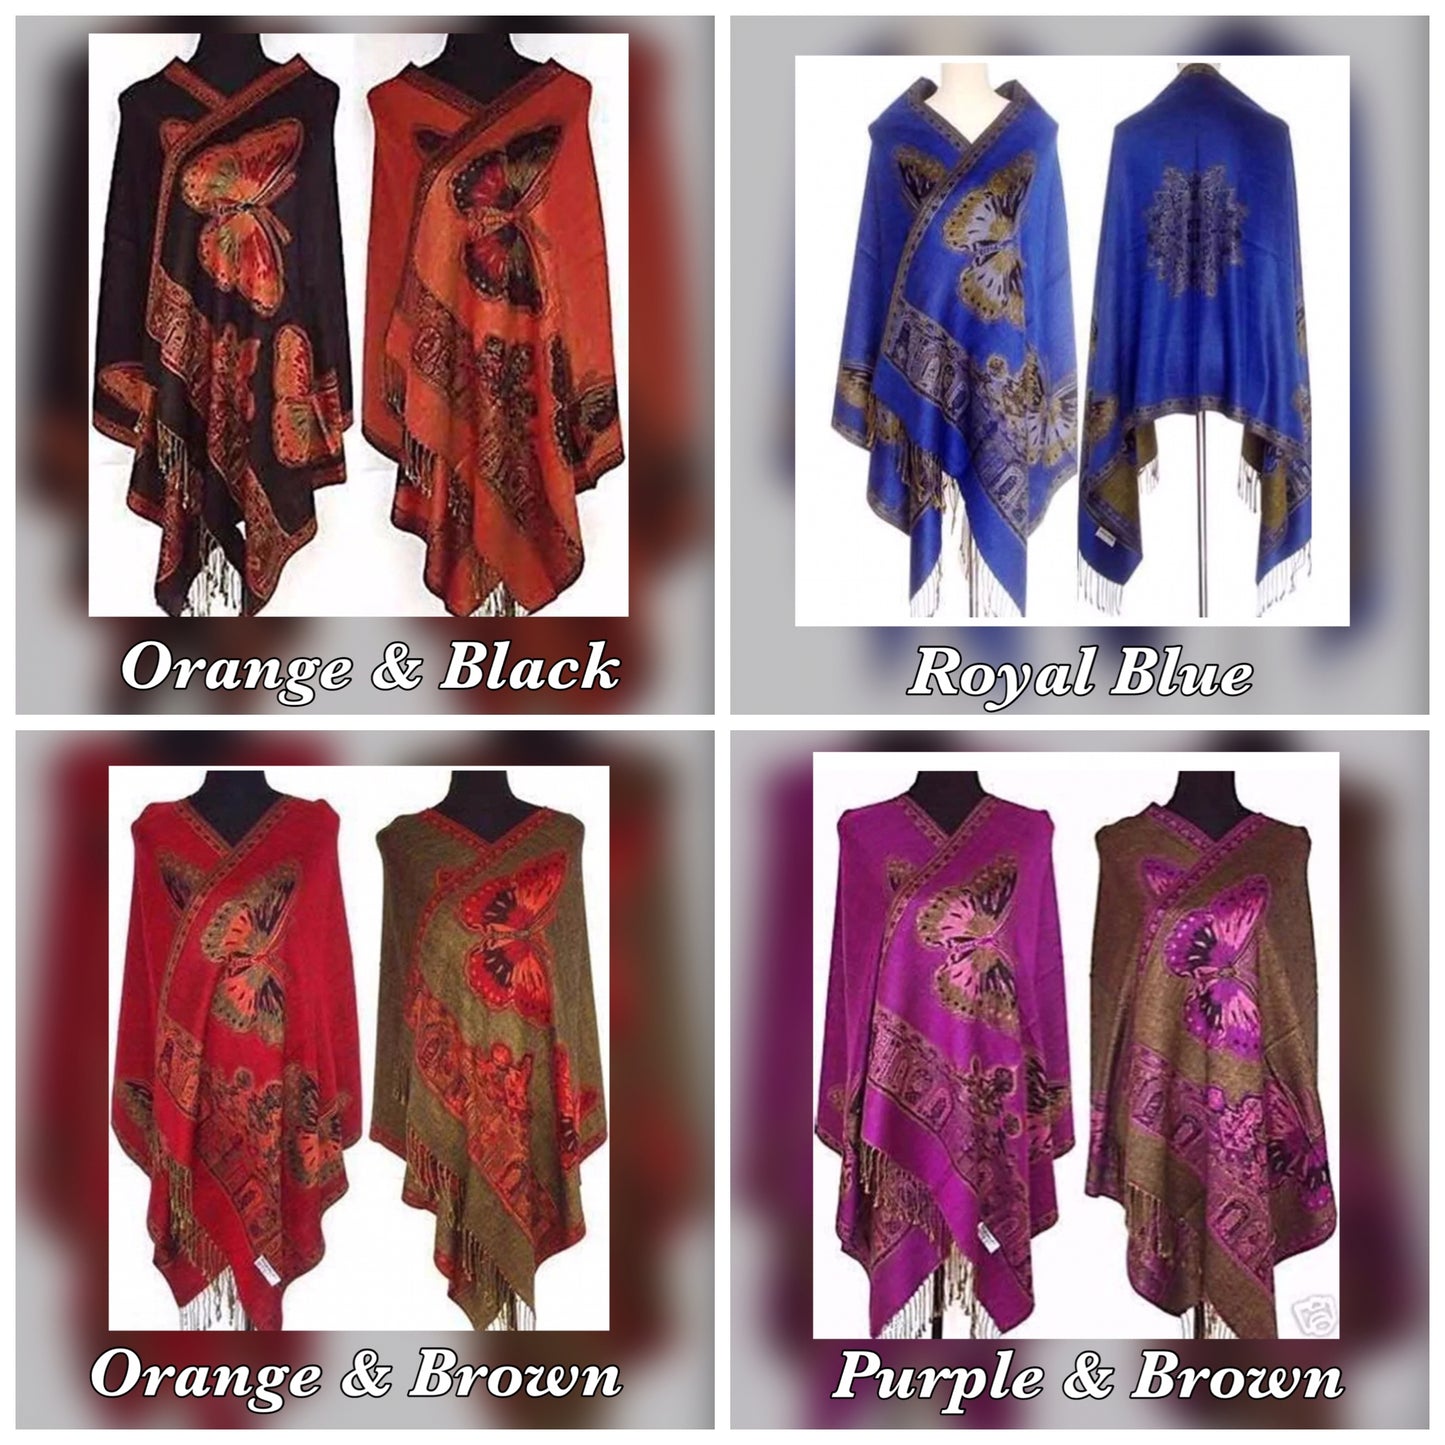 Pashmina Cashmere & Silk Shawls / Wraps - Various Colors